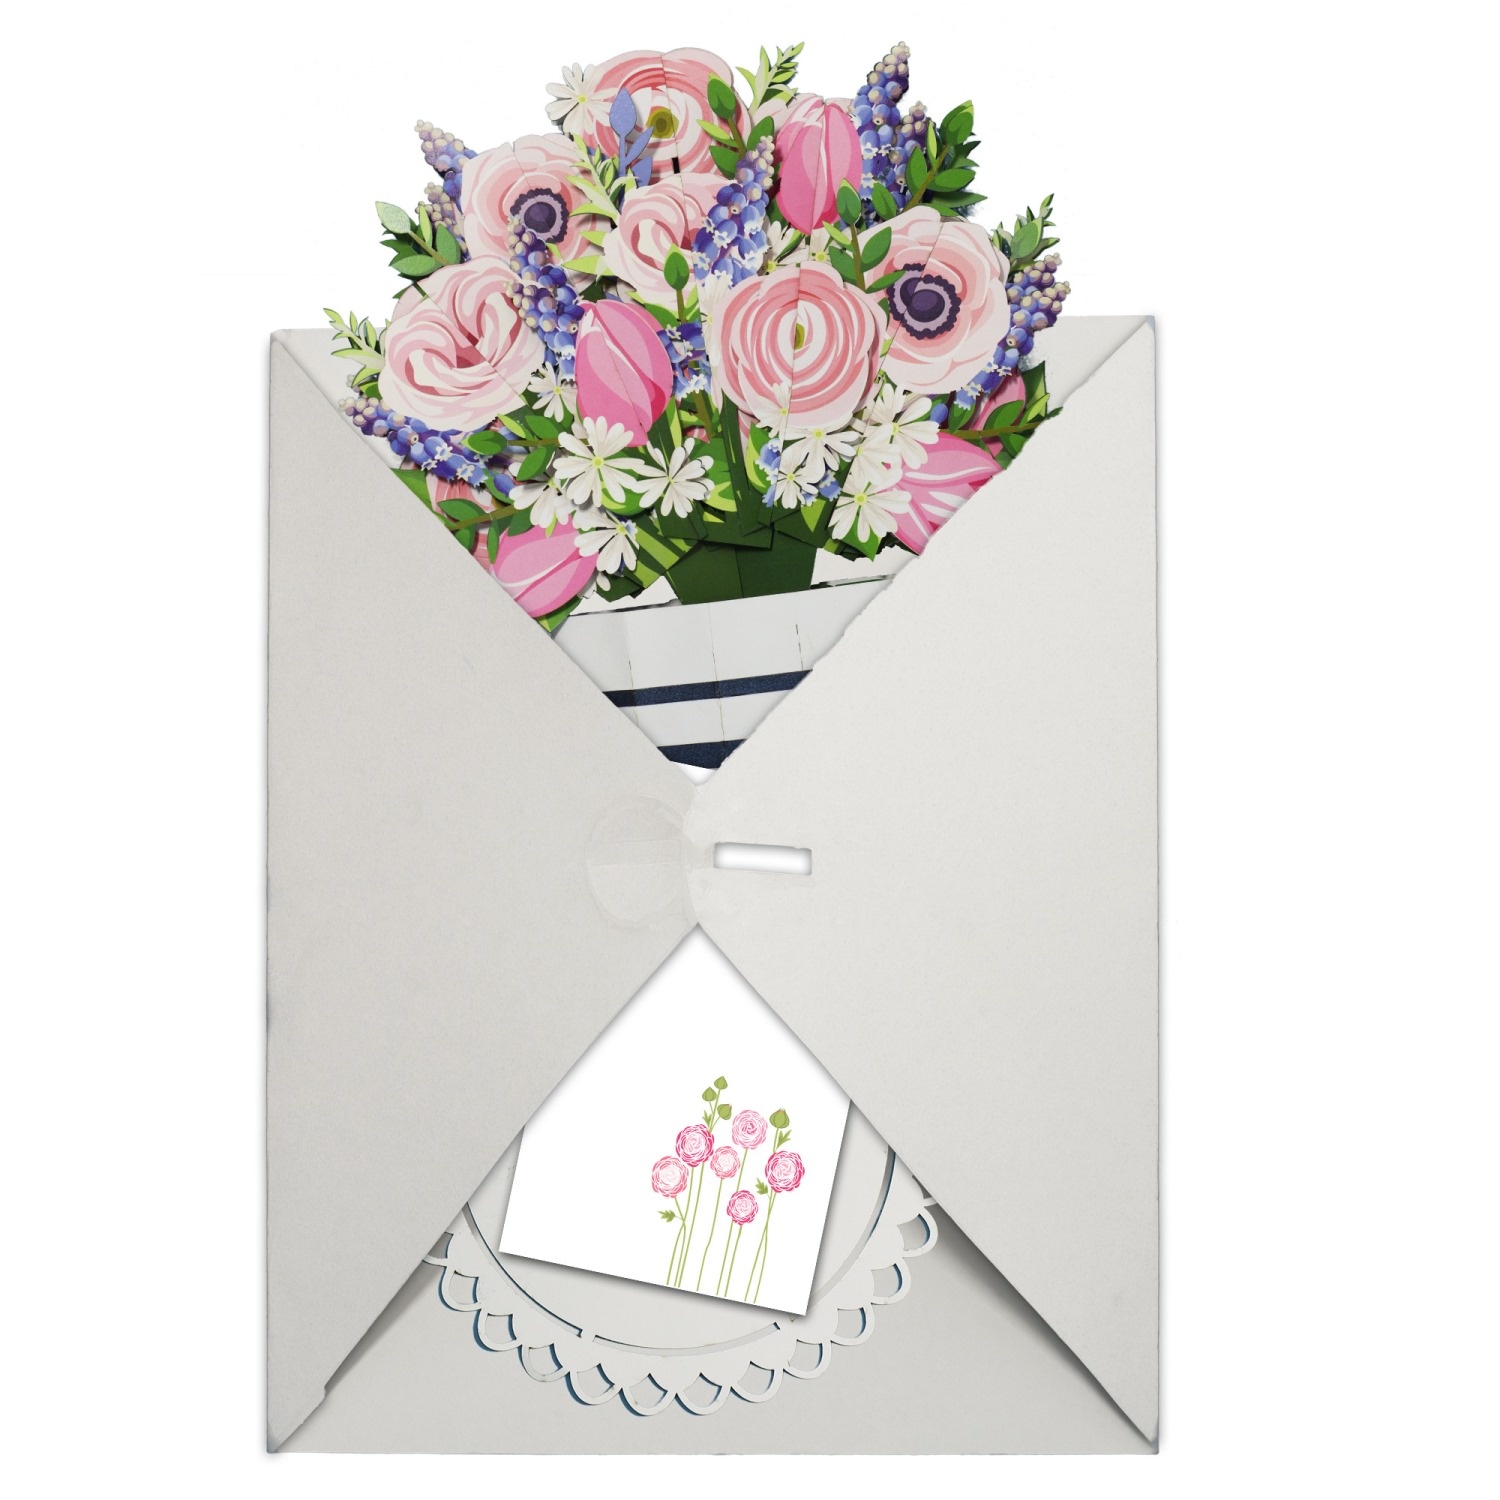 LINPOPUP LIN Pop-Up Blumenstrauß, Handgemachter Blumen aus Papier inkl. Vase u. Unterteller, als Geschenk zum Geburtstag, Muttertag, Jubiläum, Gute Besserung, Danke, Papierblumenstrauß, Ranunkeln, LIN17903, LINPopUp®, N801